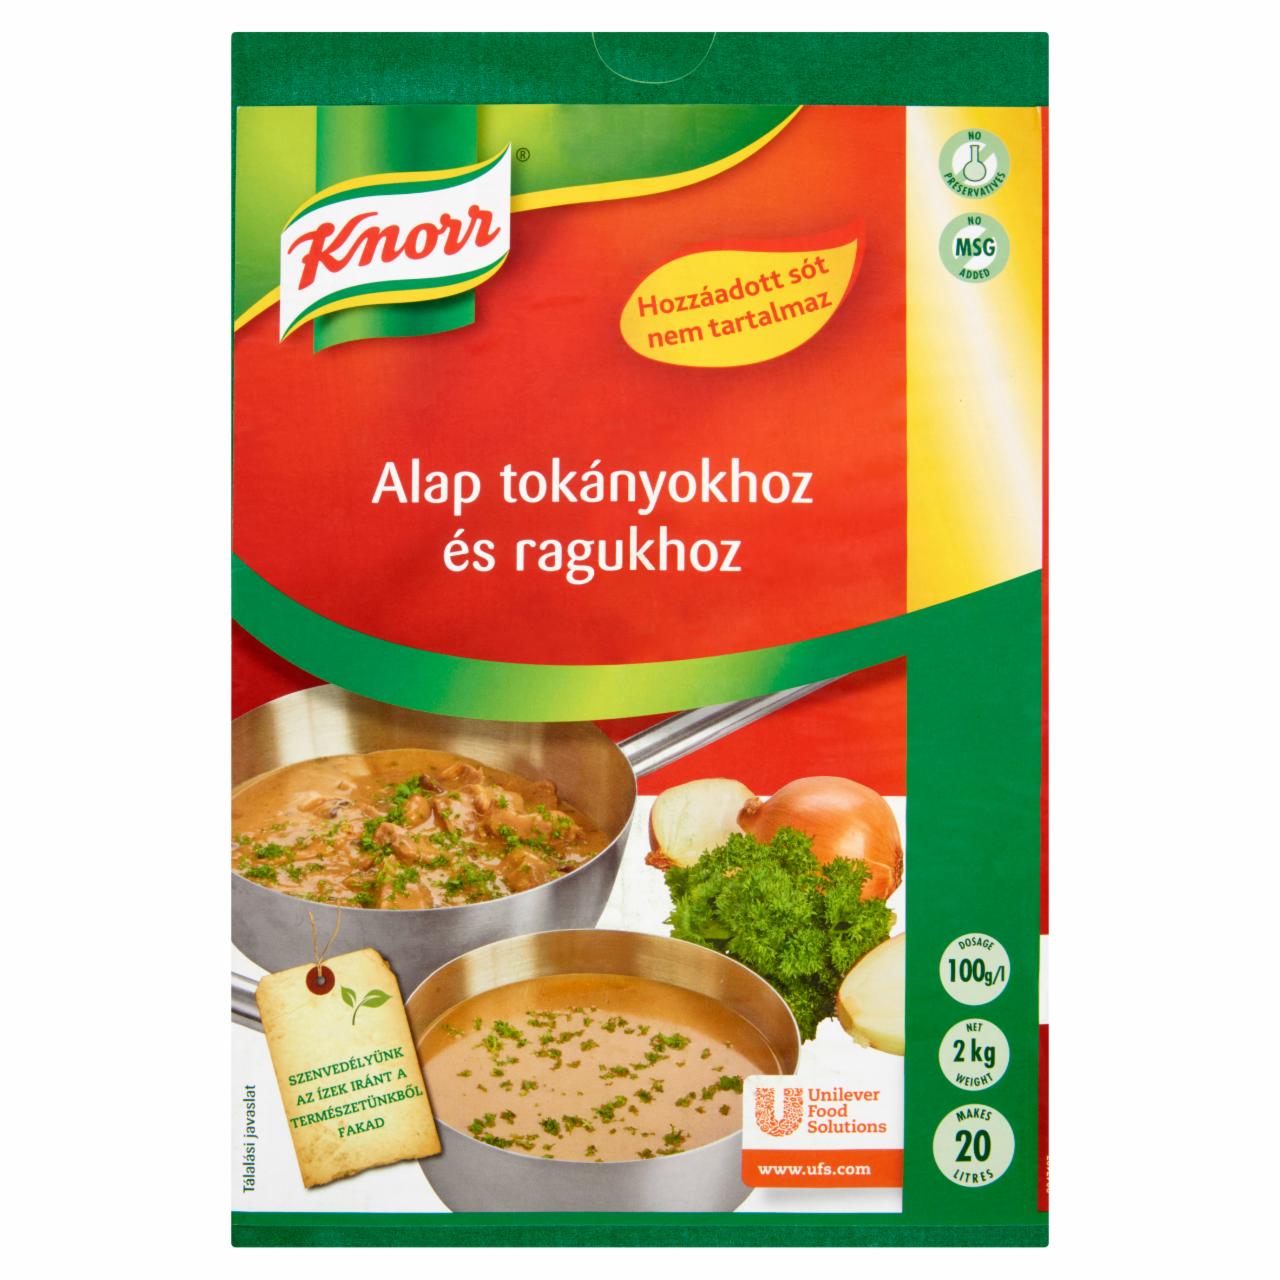 Képek - Knorr alap tokányokhoz és ragukhoz hozzáadott só nélkül 2 kg